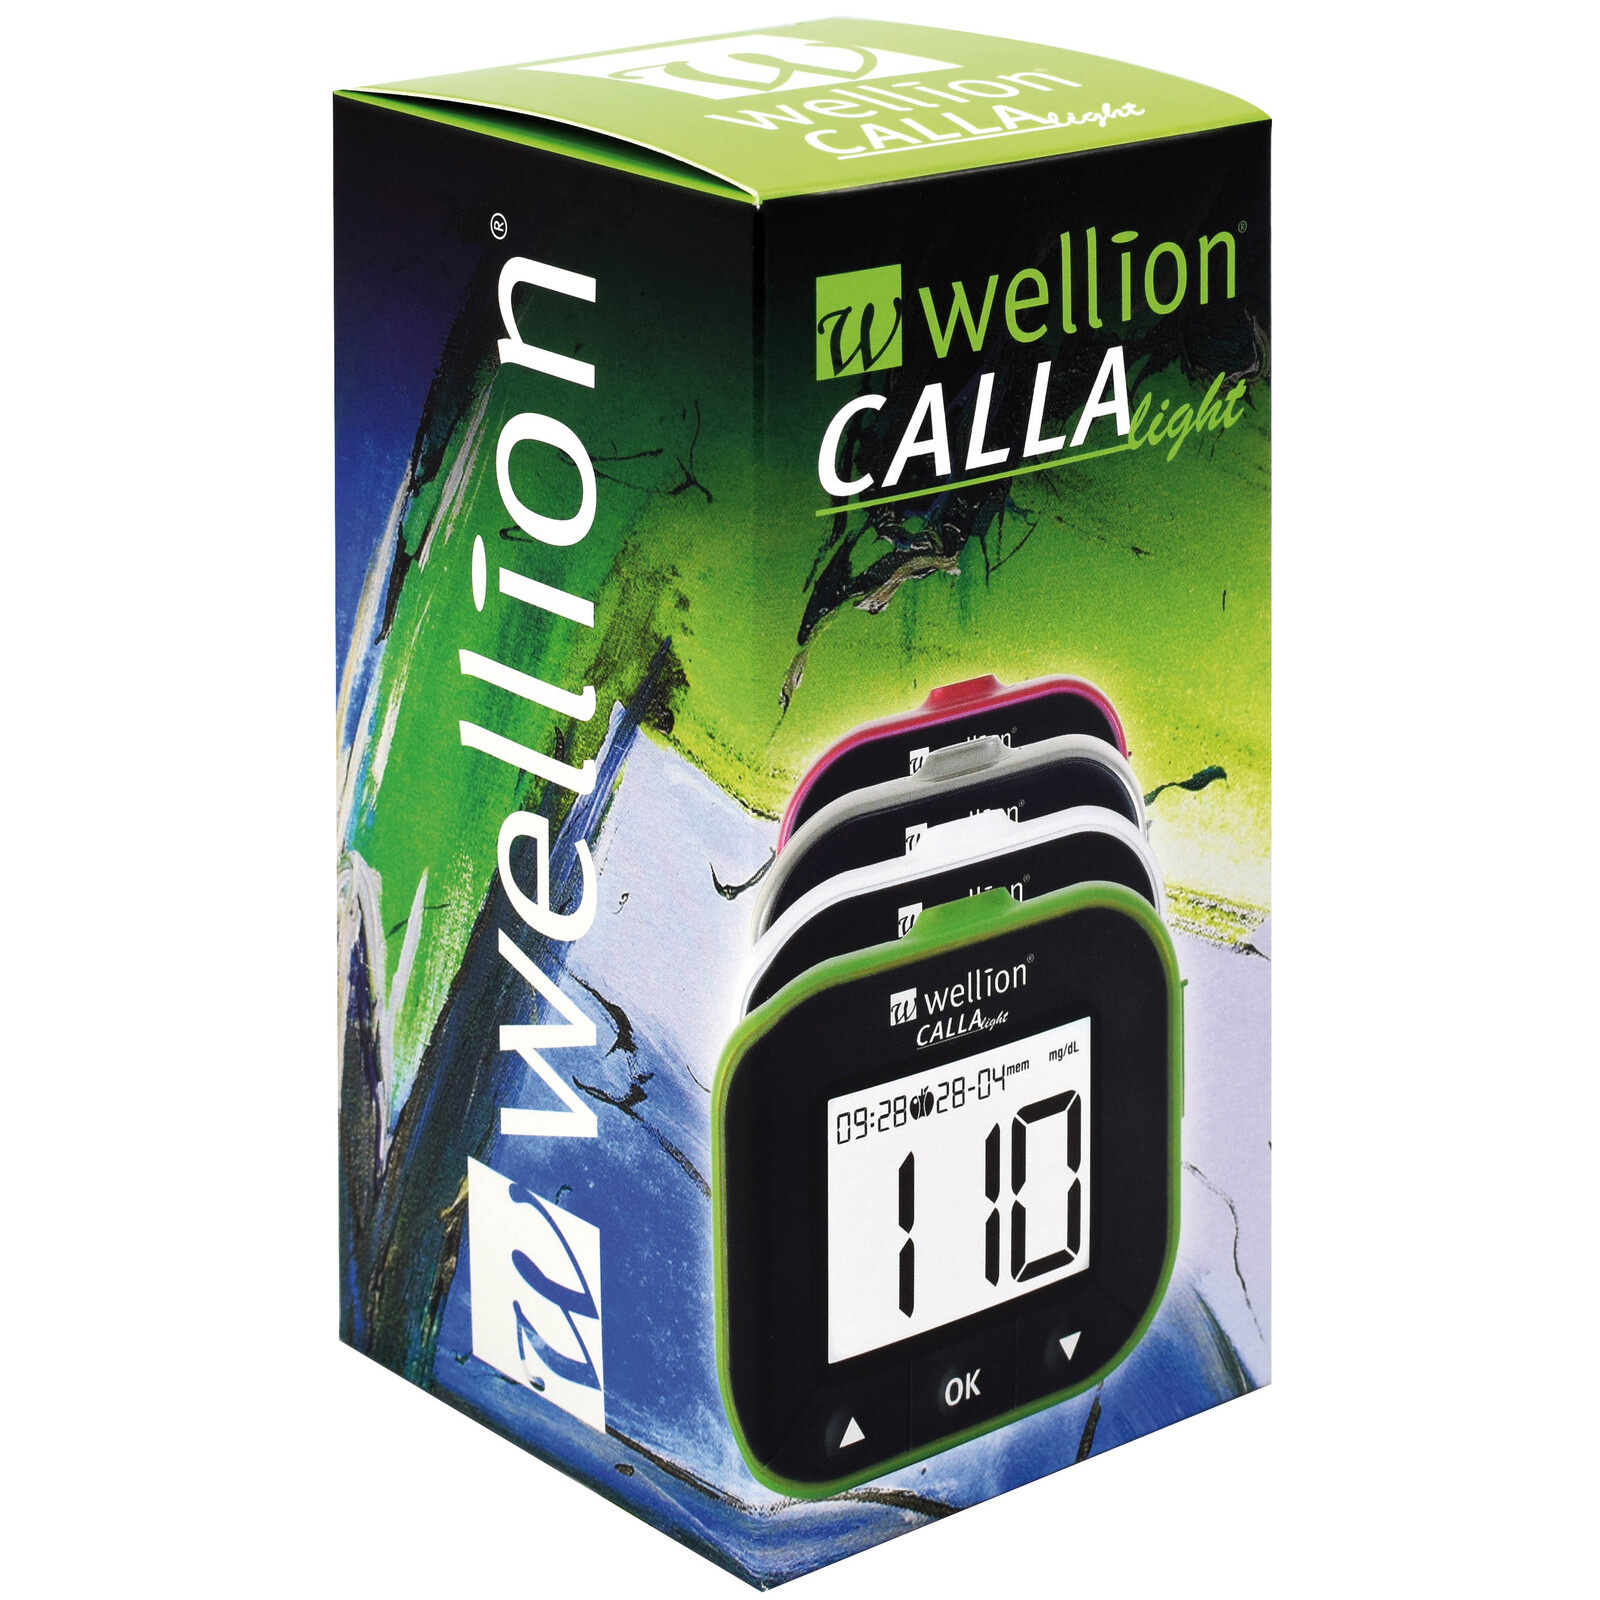 Wellion CALLA Light Set 10 TS blackberry Blutzuckermessgerät